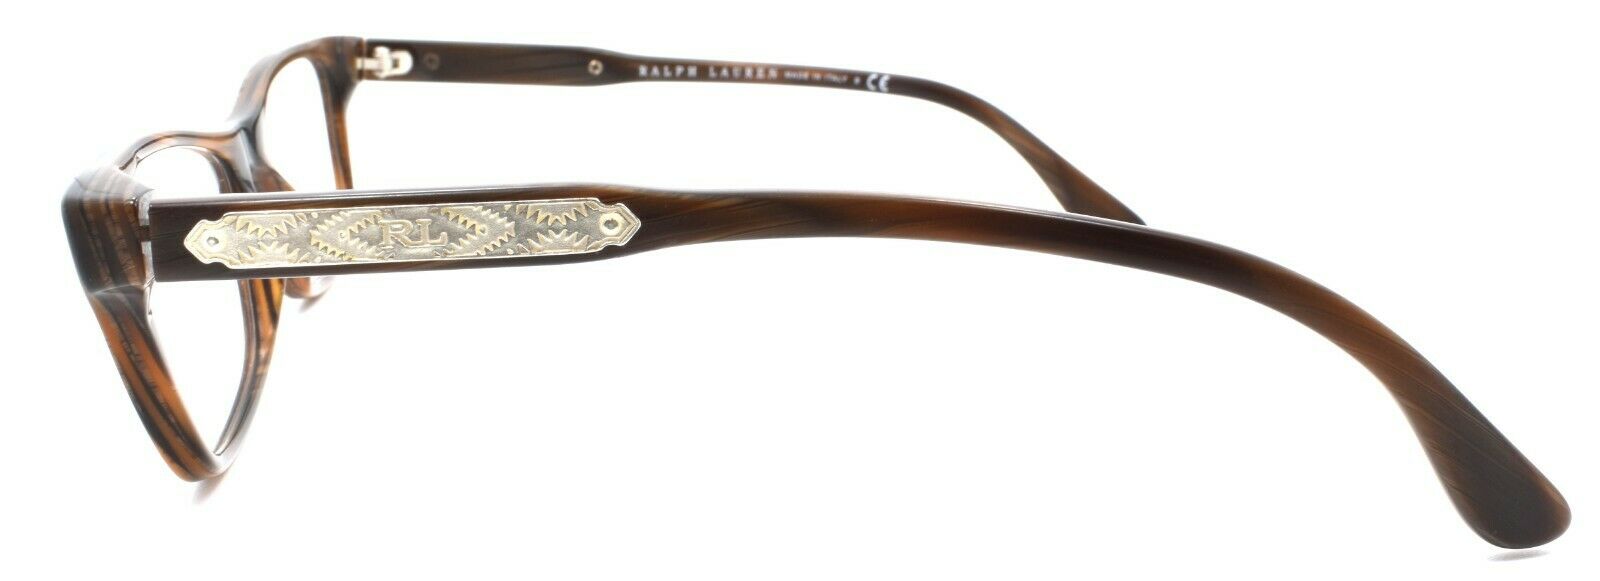 3-Ralph Lauren RL6115 5472 Women's Eyeglasses Frames 51-16-140 Brown Horn-8053672232615-IKSpecs